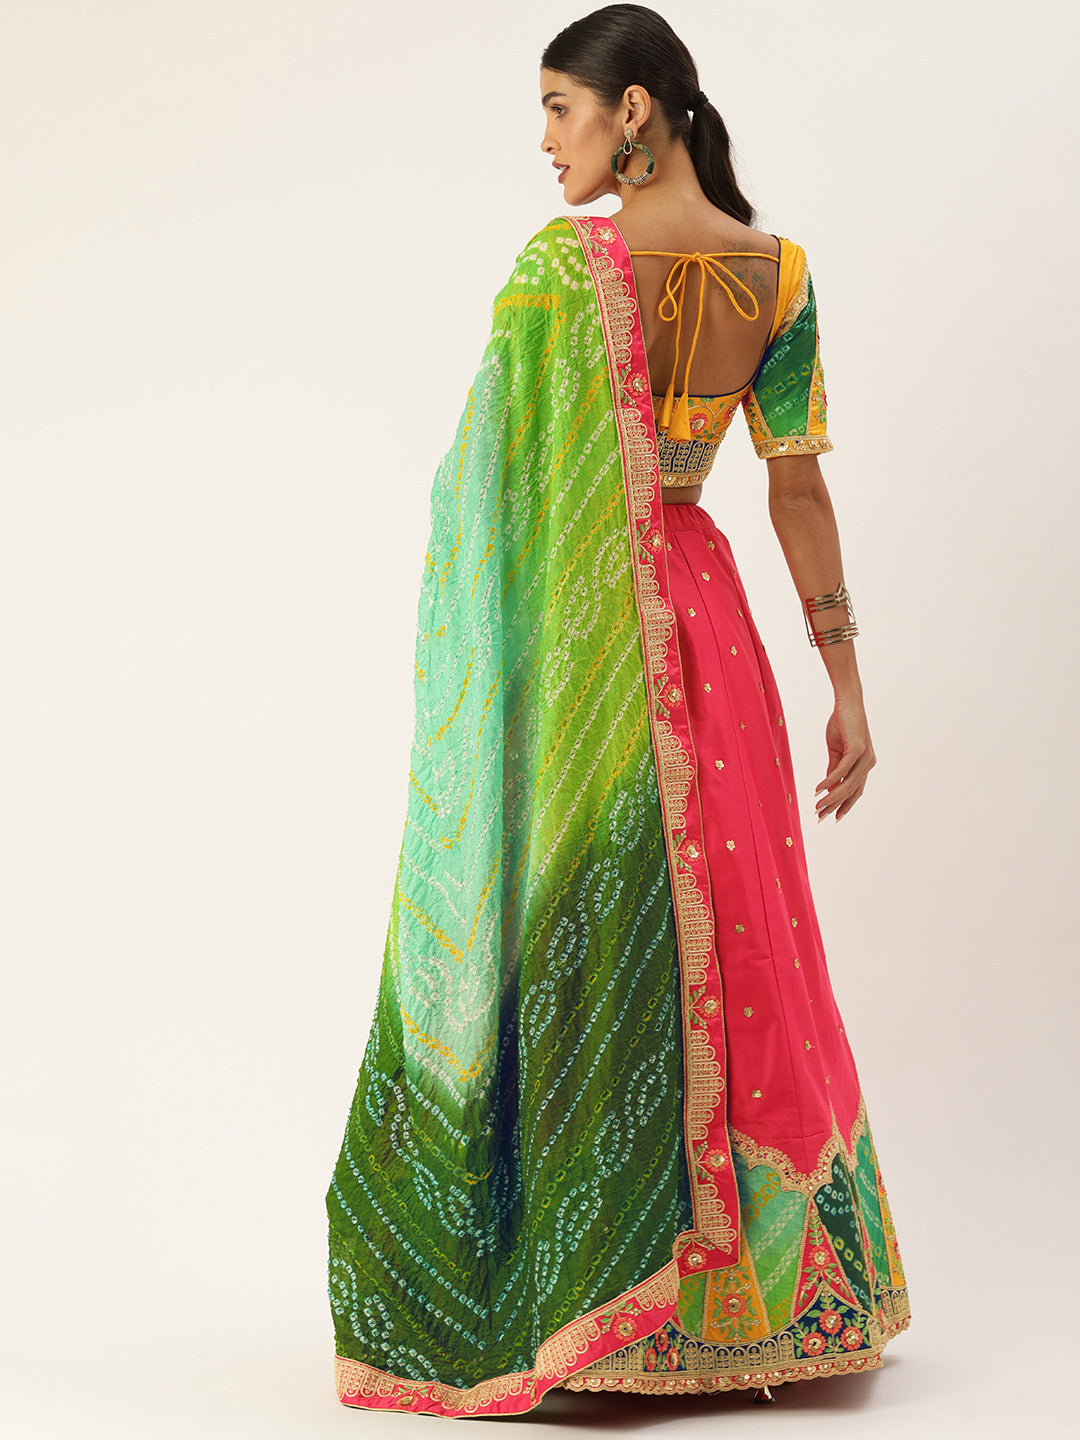 Indian Designer Bridal Bollywood Party Lengha Heavy New Pakistani Lehenga  Choli | eBay